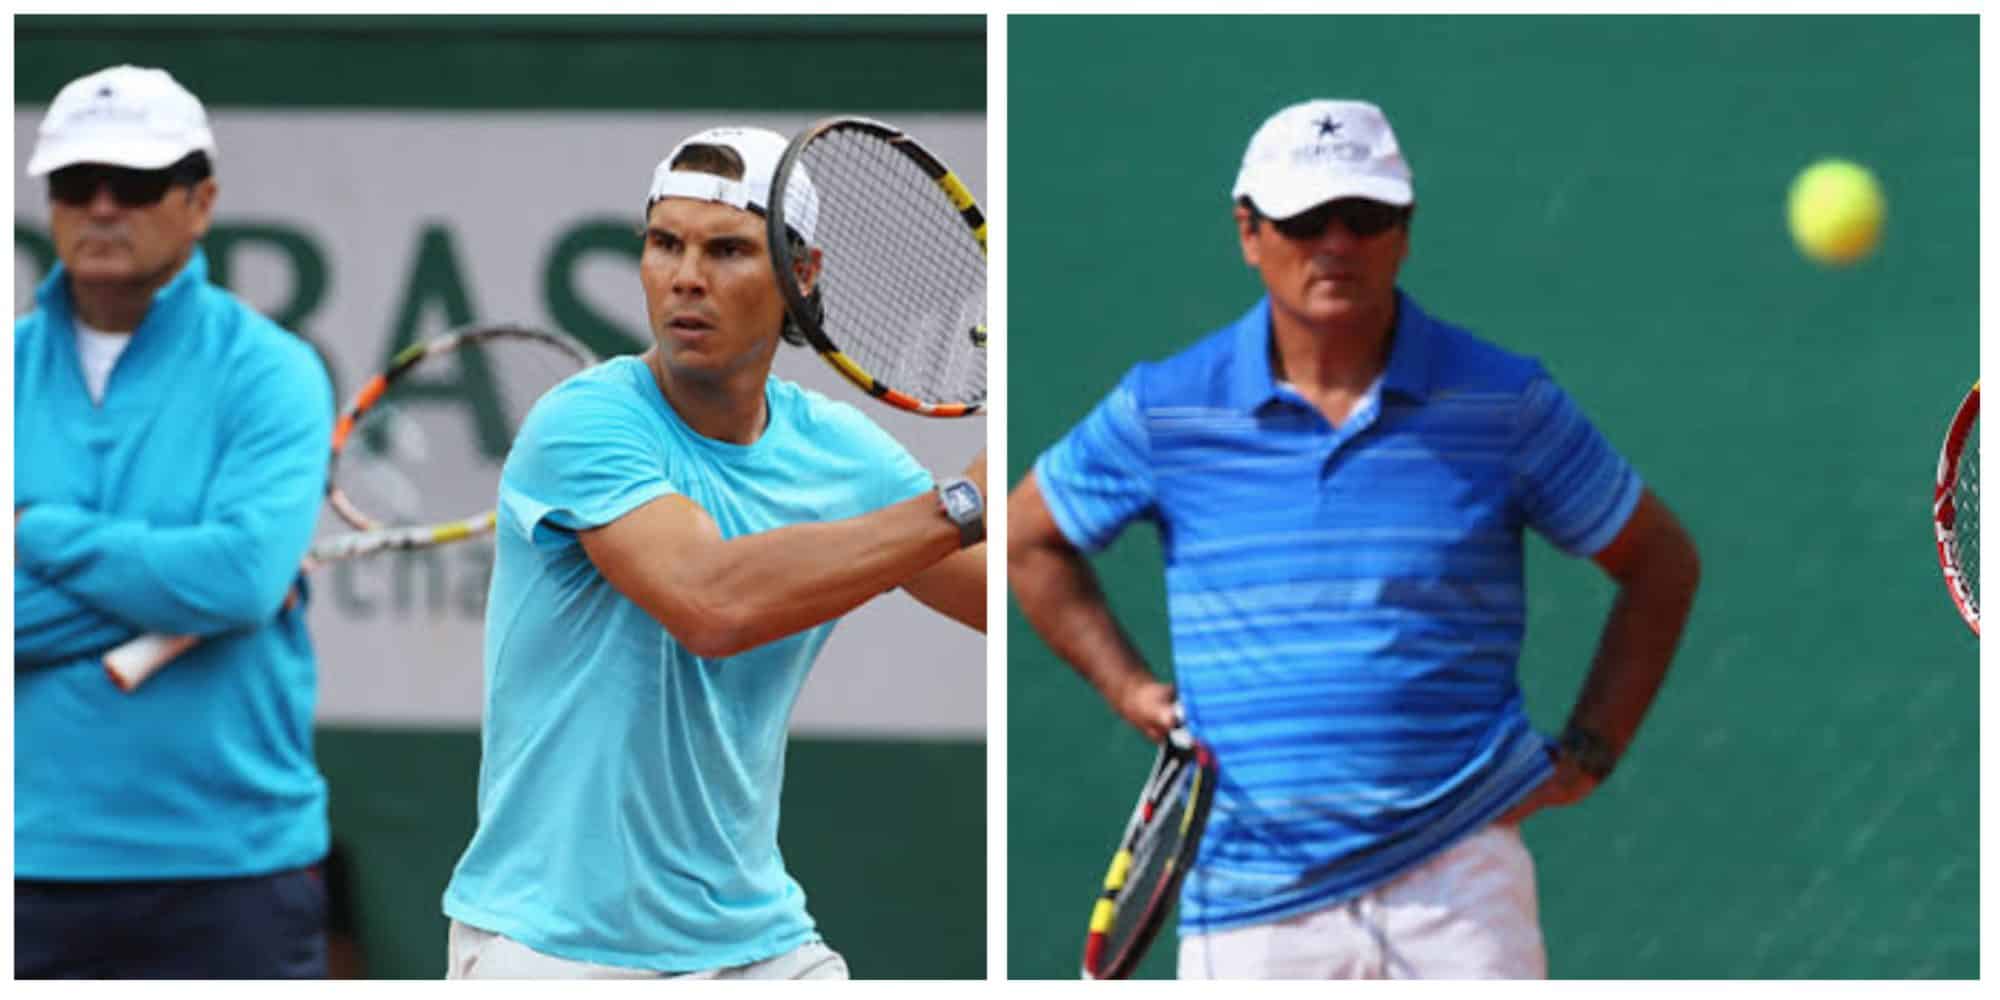 Rafael Nadal and Toni Nadal (Credit: Google)